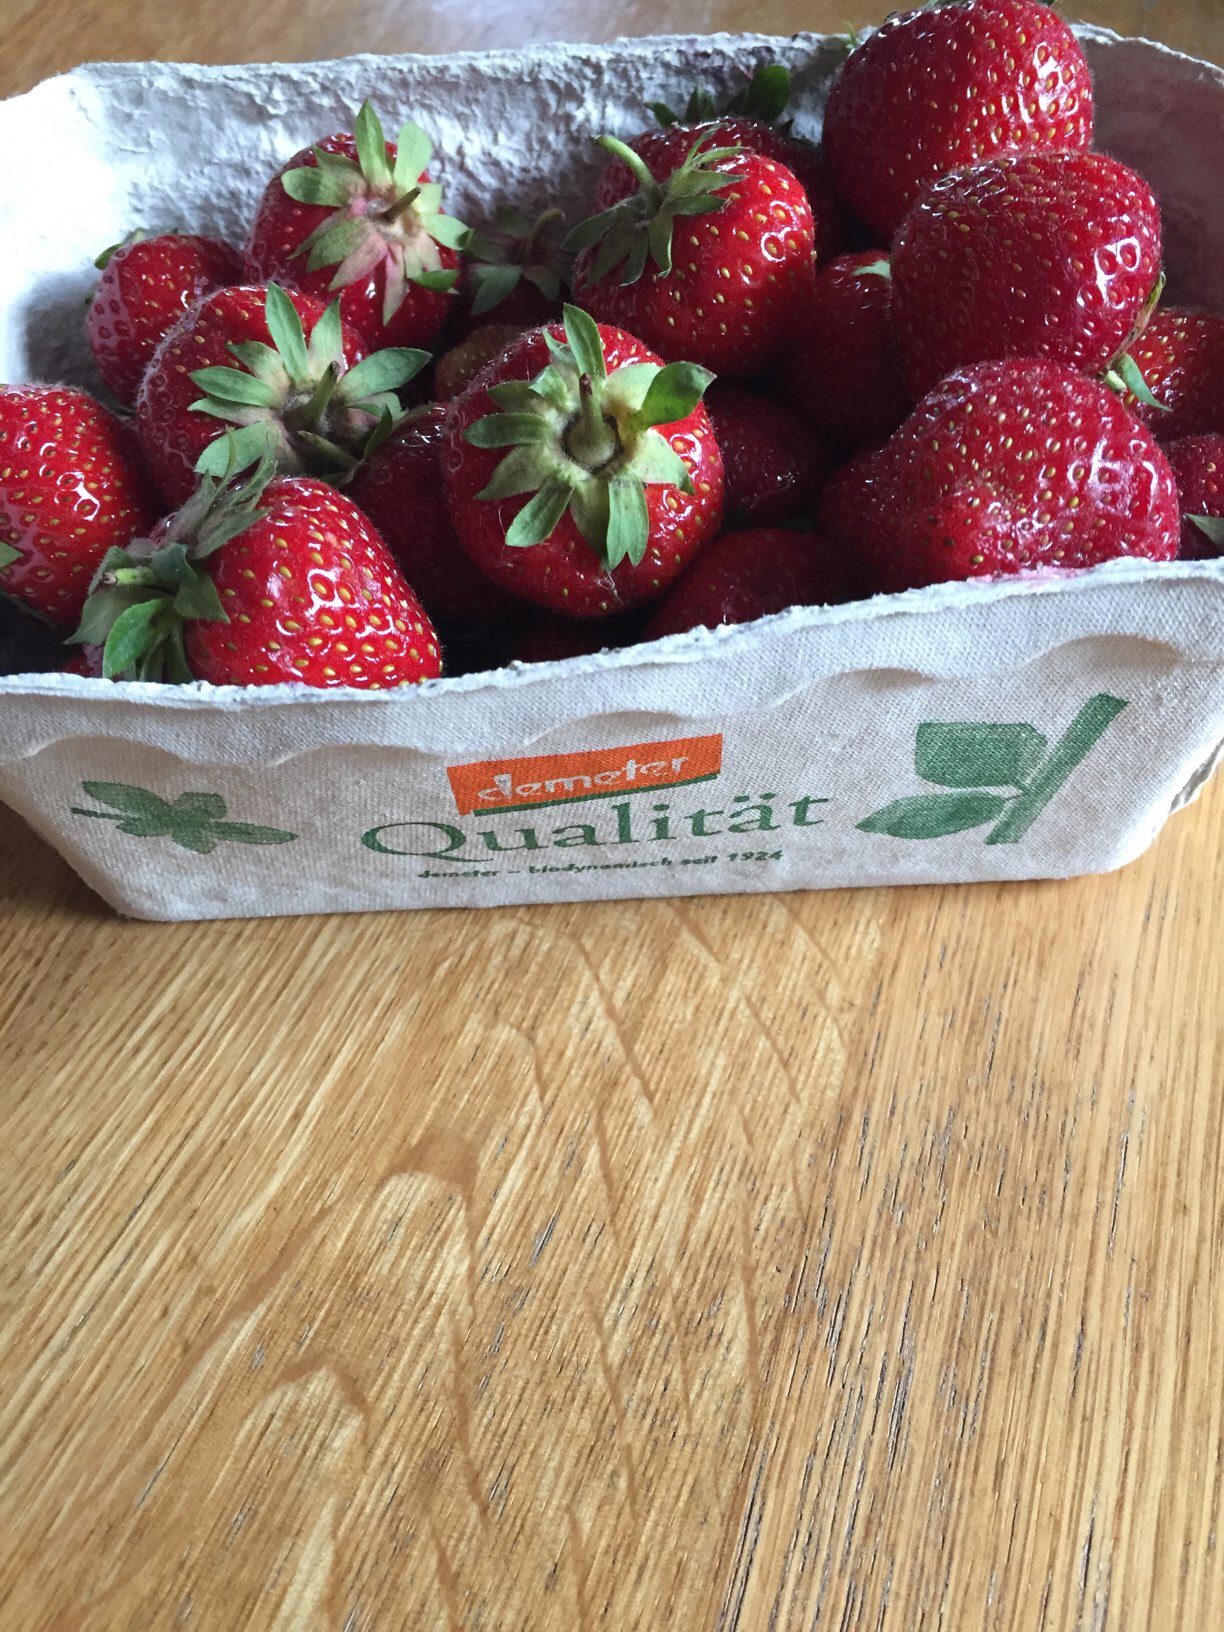 Ein Pfund Erdbeeren 7,70 €